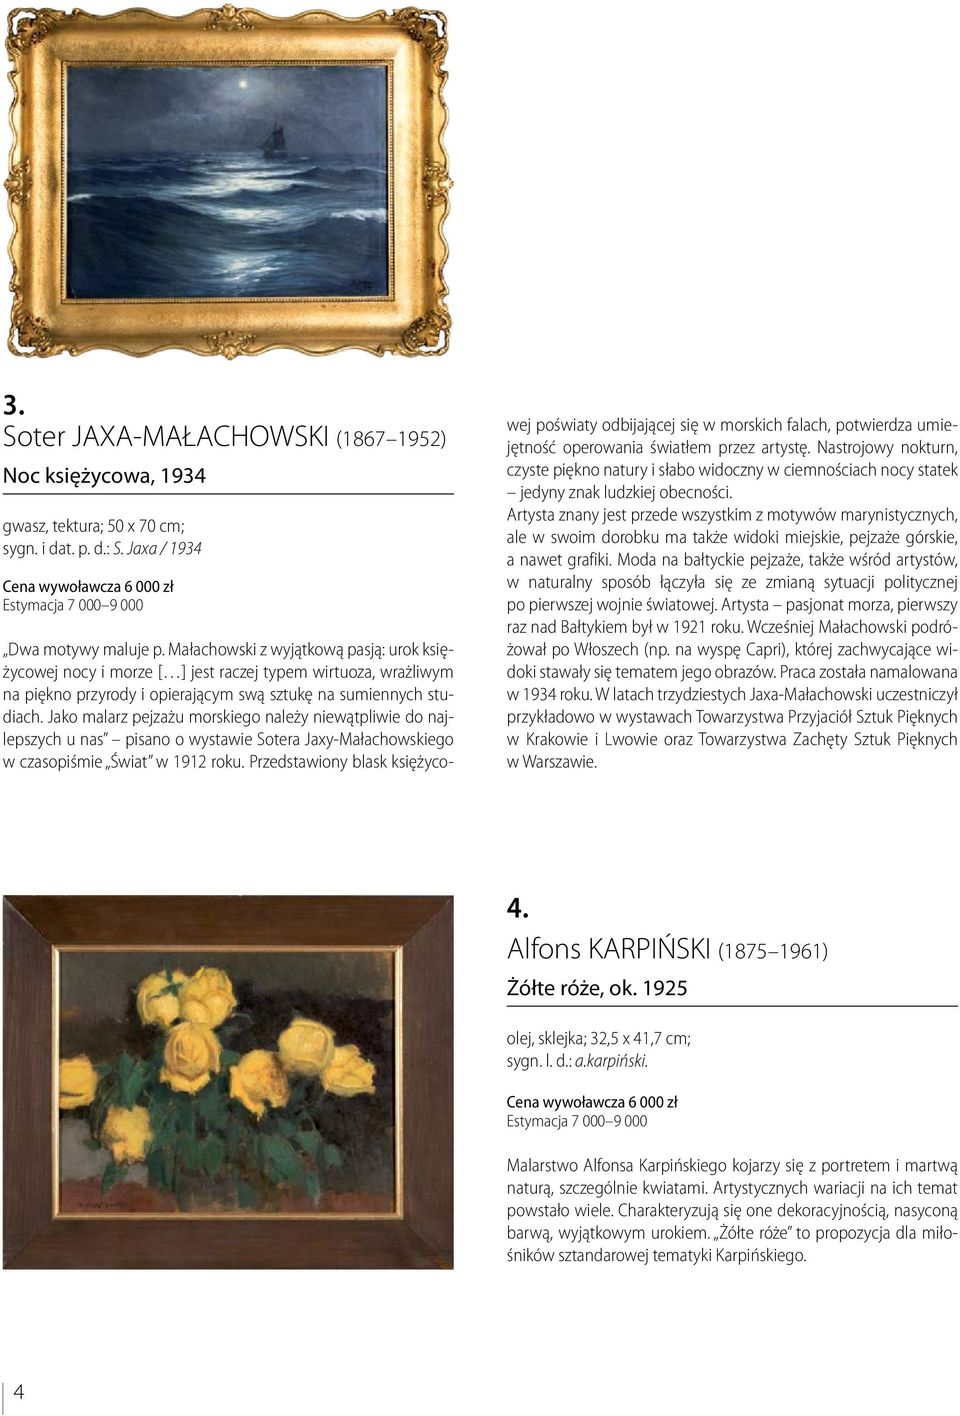 Jako malarz pejzażu morskiego należy niewątpliwie do najlepszych u nas pisano o wystawie Sotera Jaxy-Małachowskiego w czasopiśmie Świat w 1912 roku.